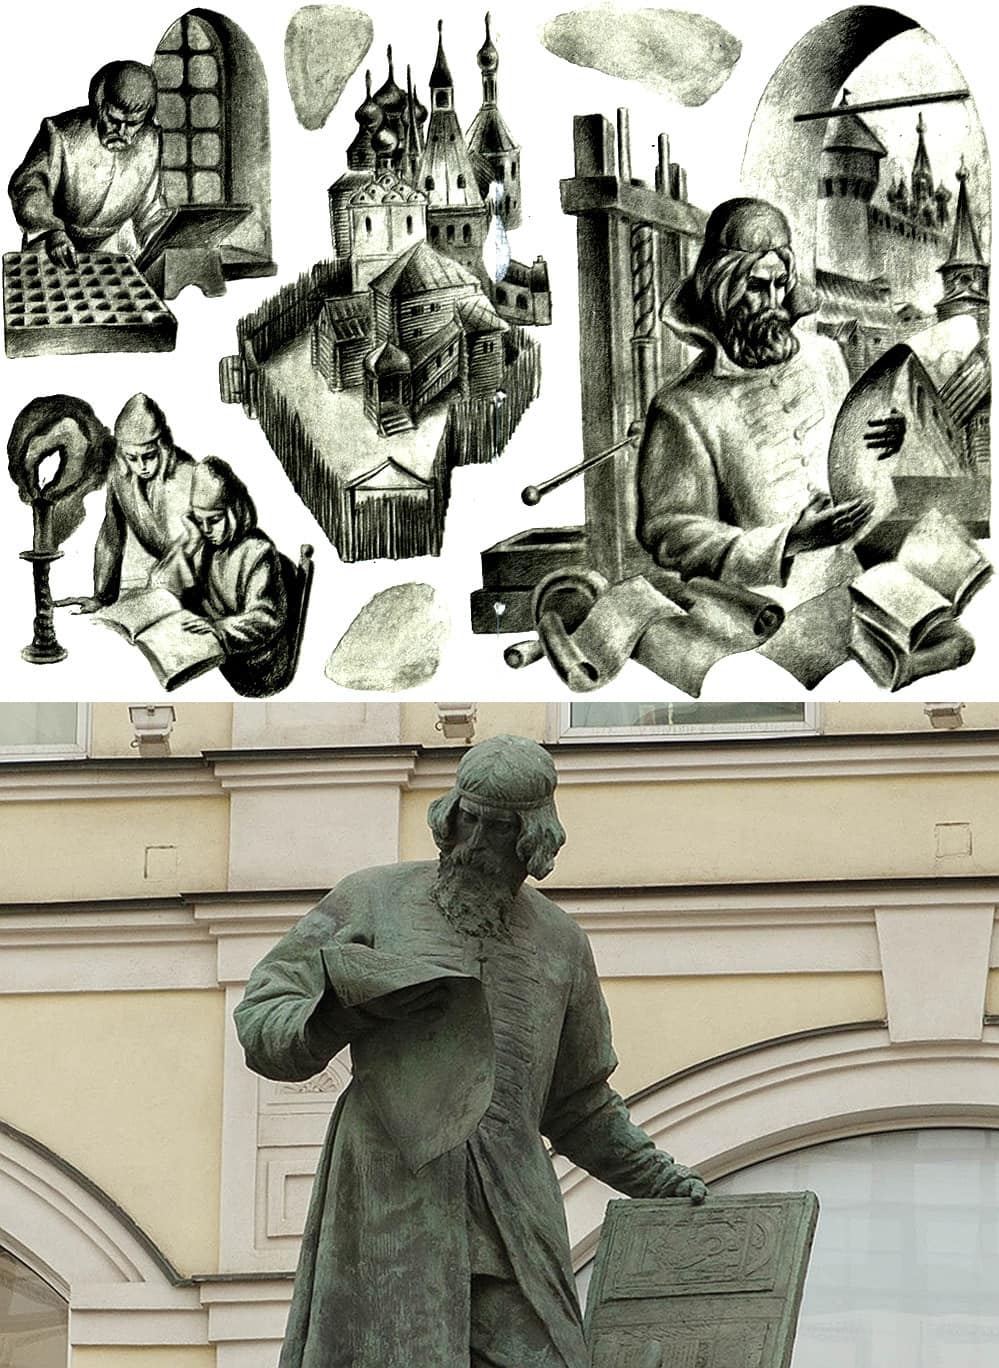 памятник ивану федорову в москве